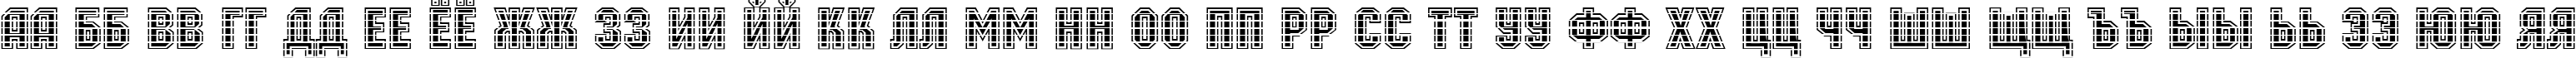 Пример написания русского алфавита шрифтом a_MachinaOrtoMltGr Bold